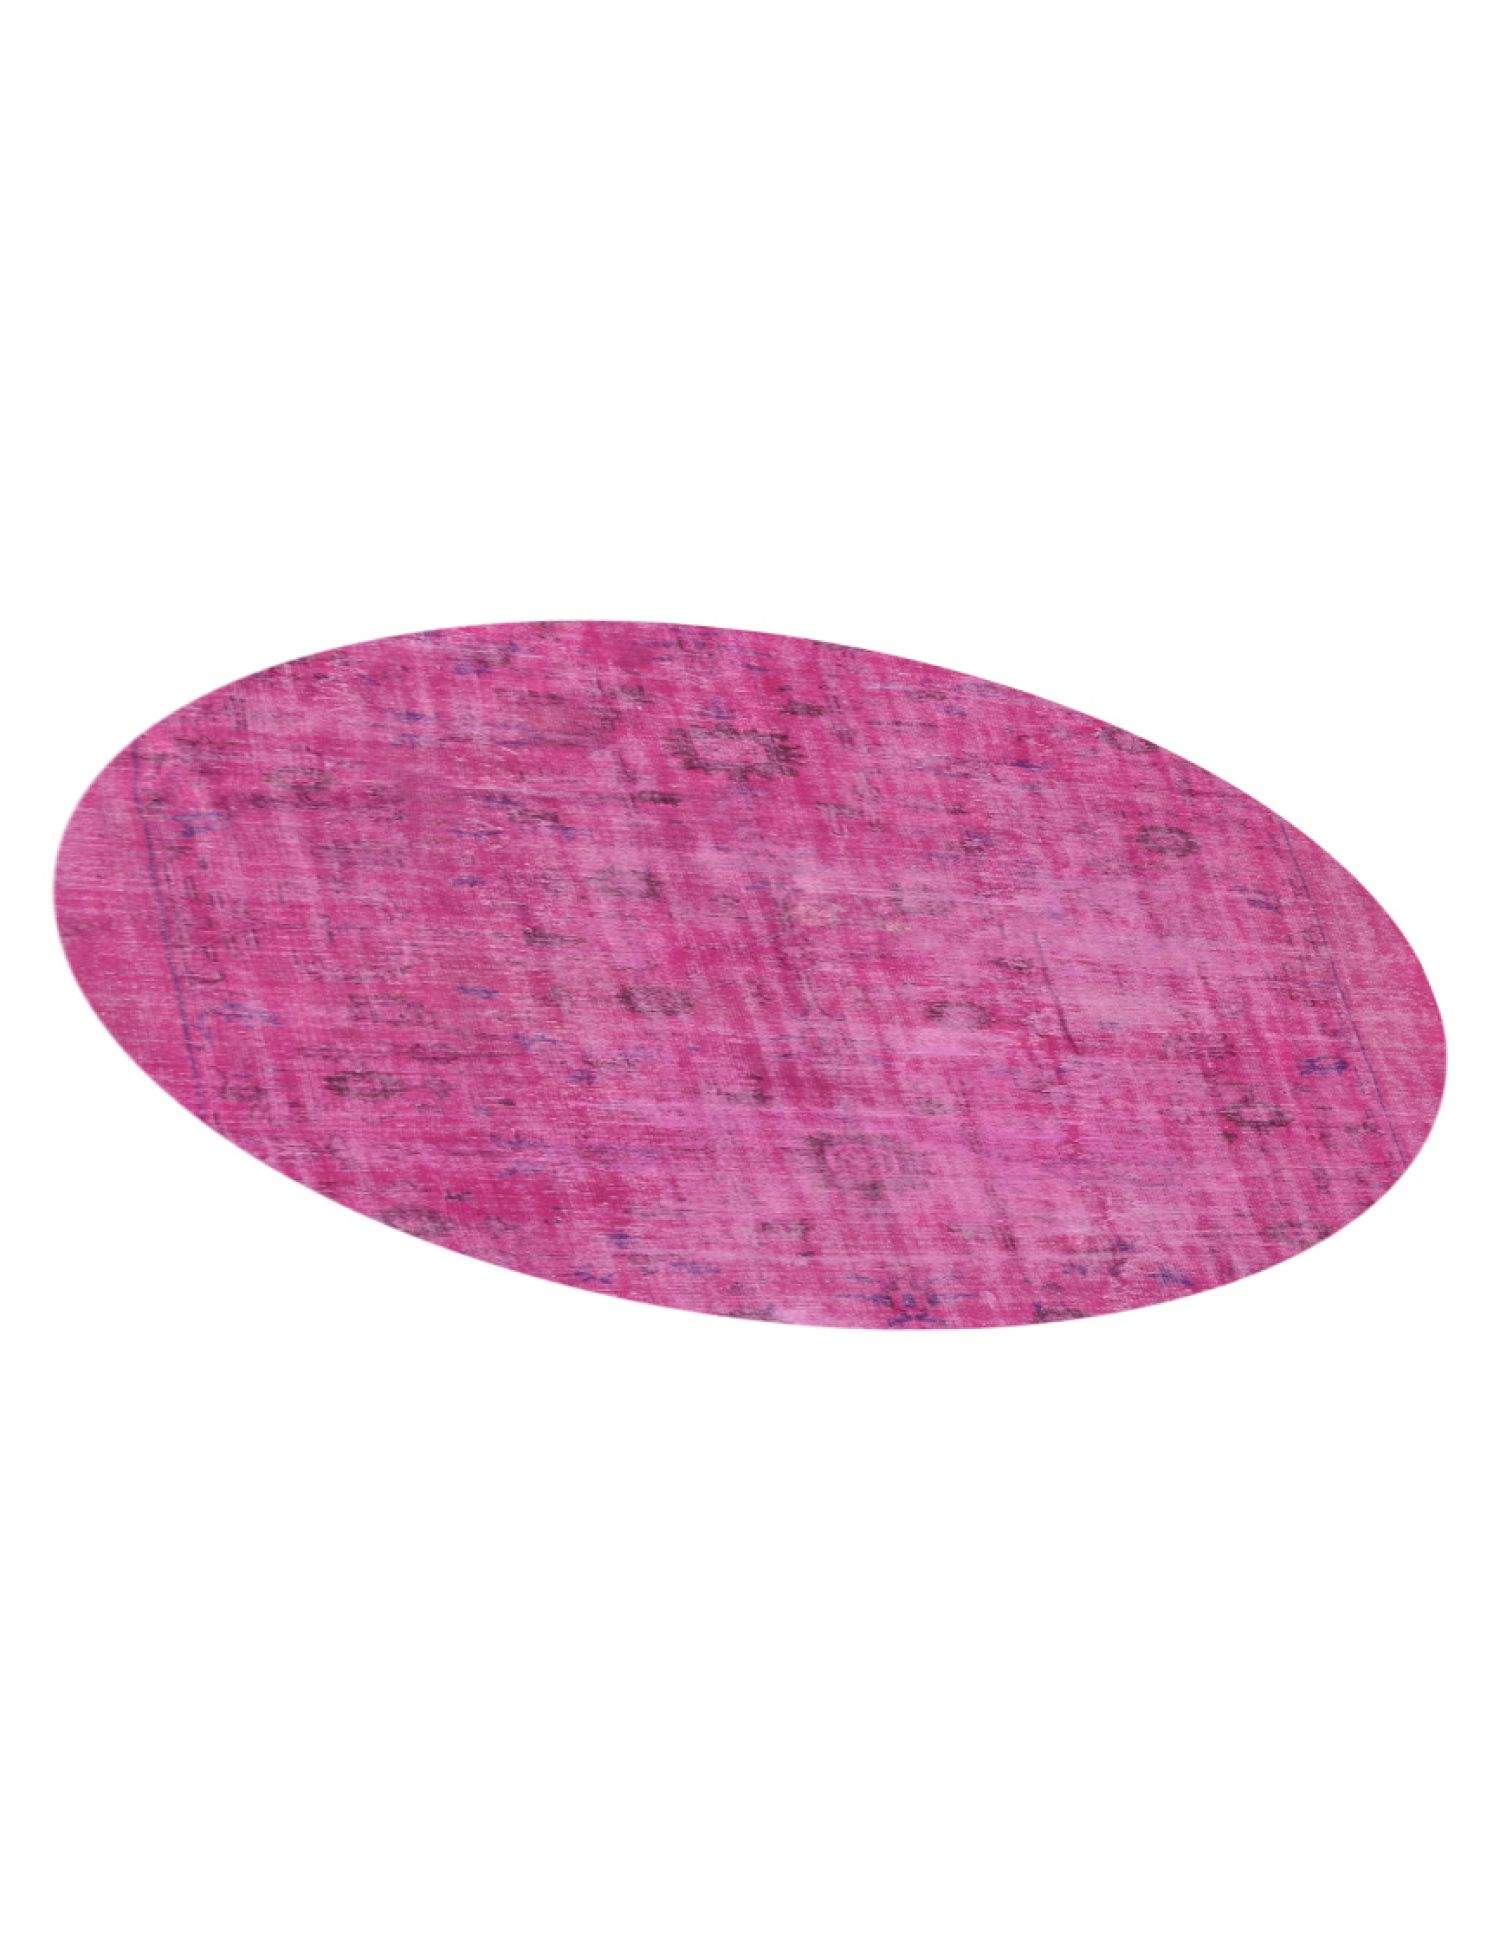 Vintage Teppich rund  rosa <br/>252 x 252 cm